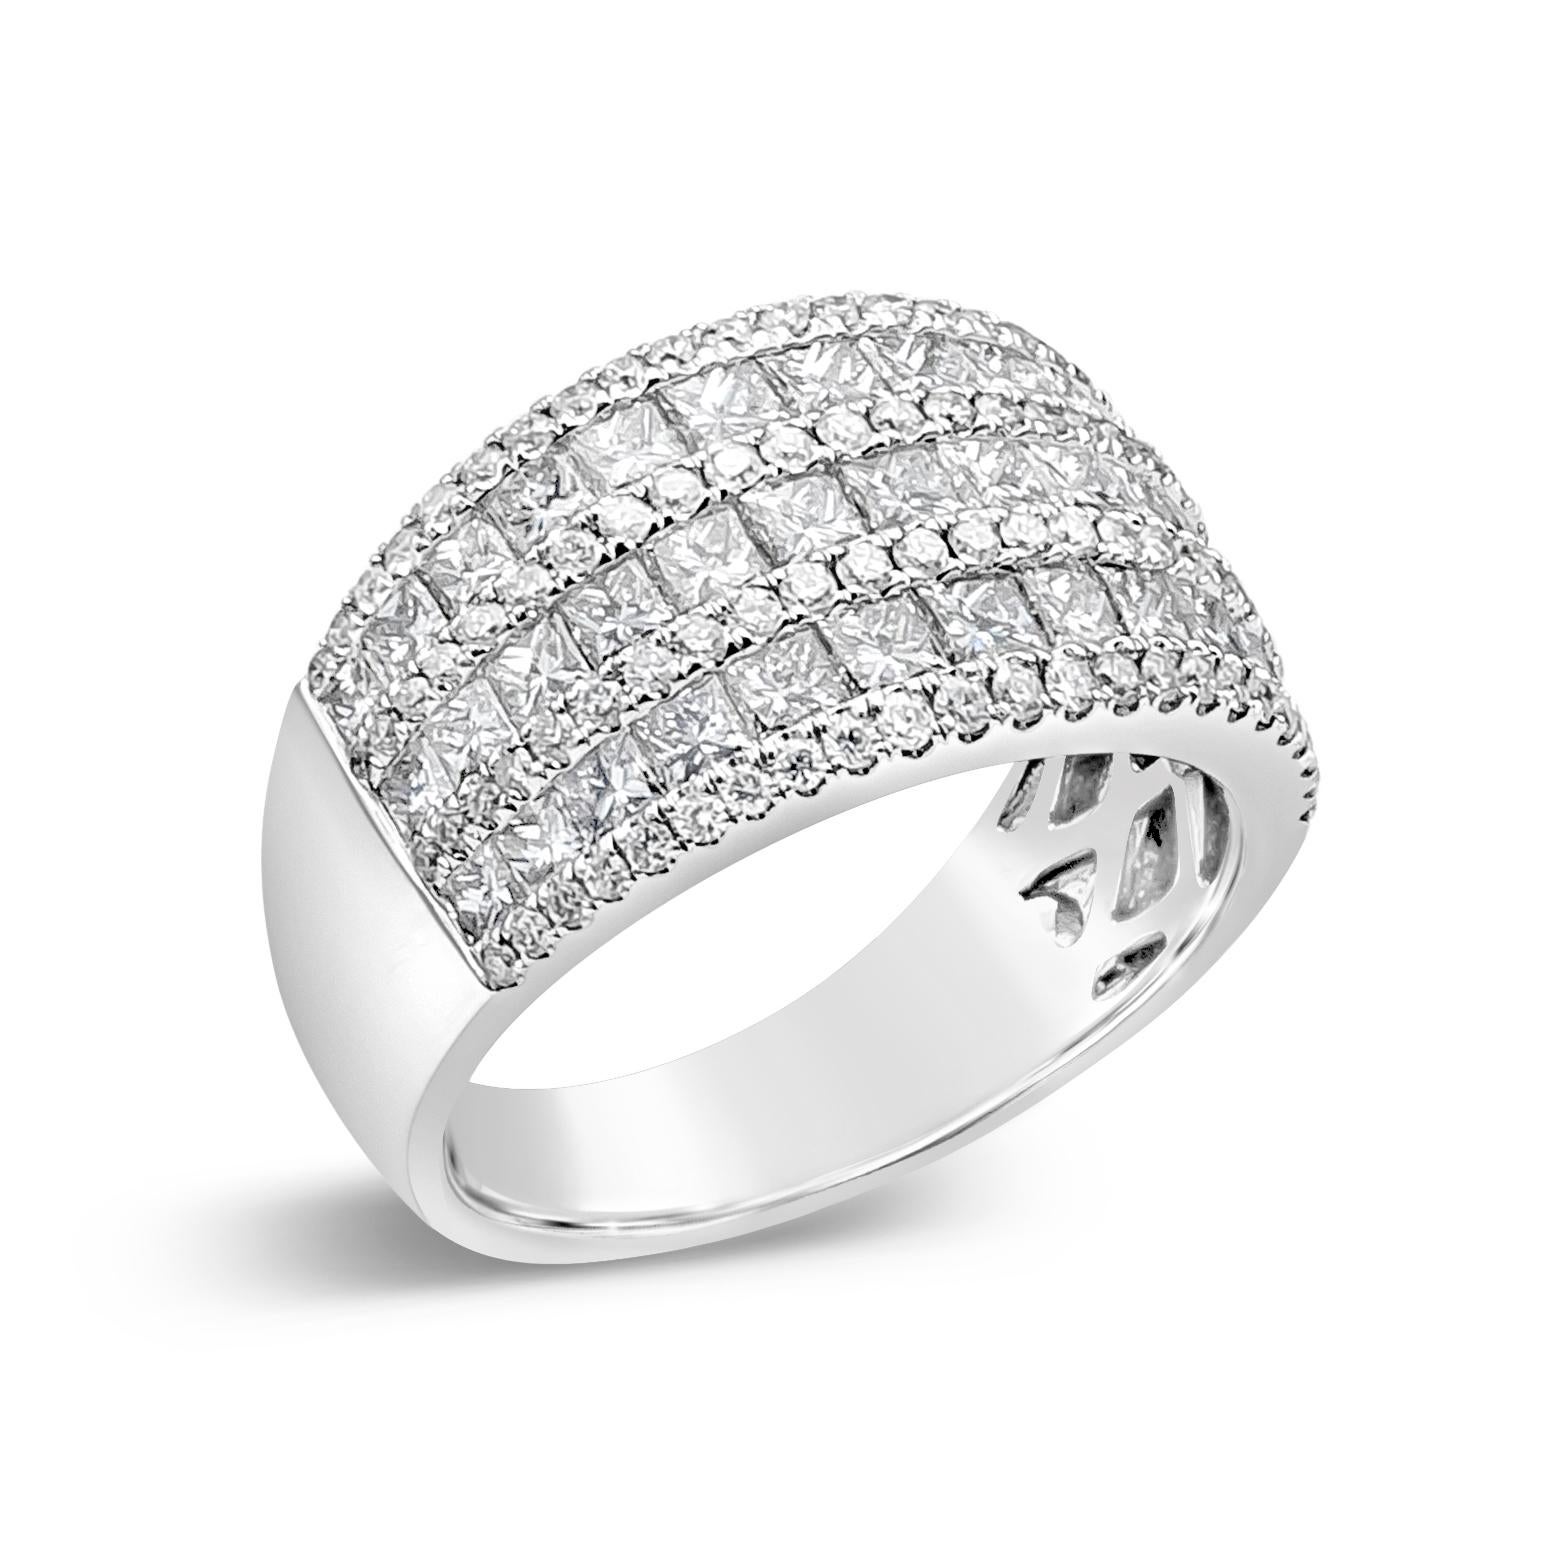 Roman Malakov 2.27 Carat Total Princess Cut Diamonds Triple Rows Fashion Ring For Sale 1